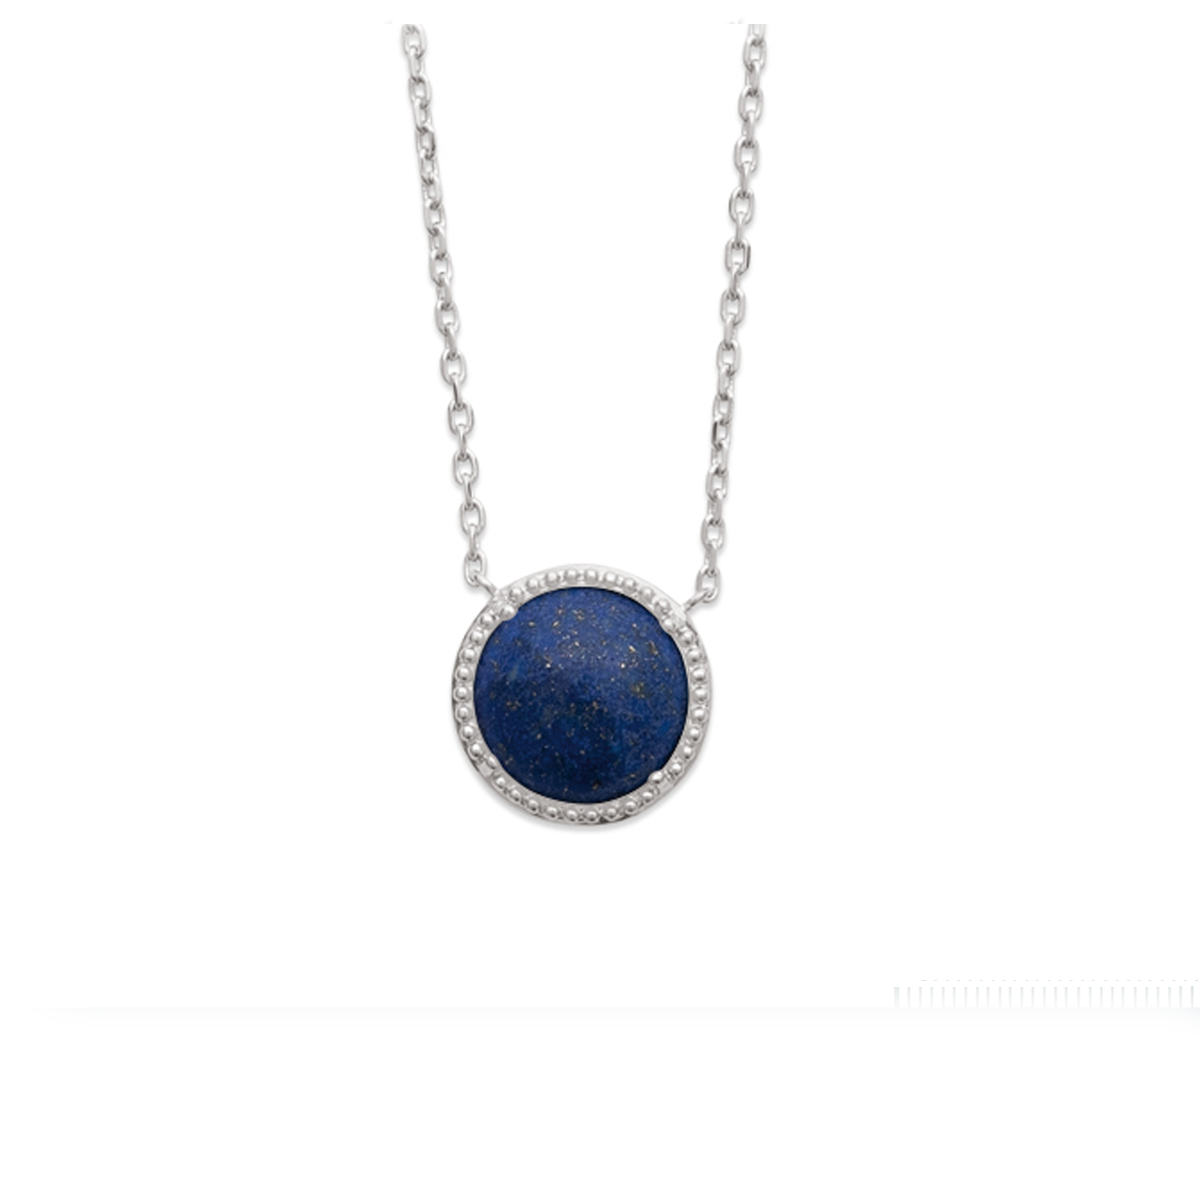 Collier argent \'Cléopatra\' lapis lazuli argenté (rhodié) - 12 mm - [Q6673]